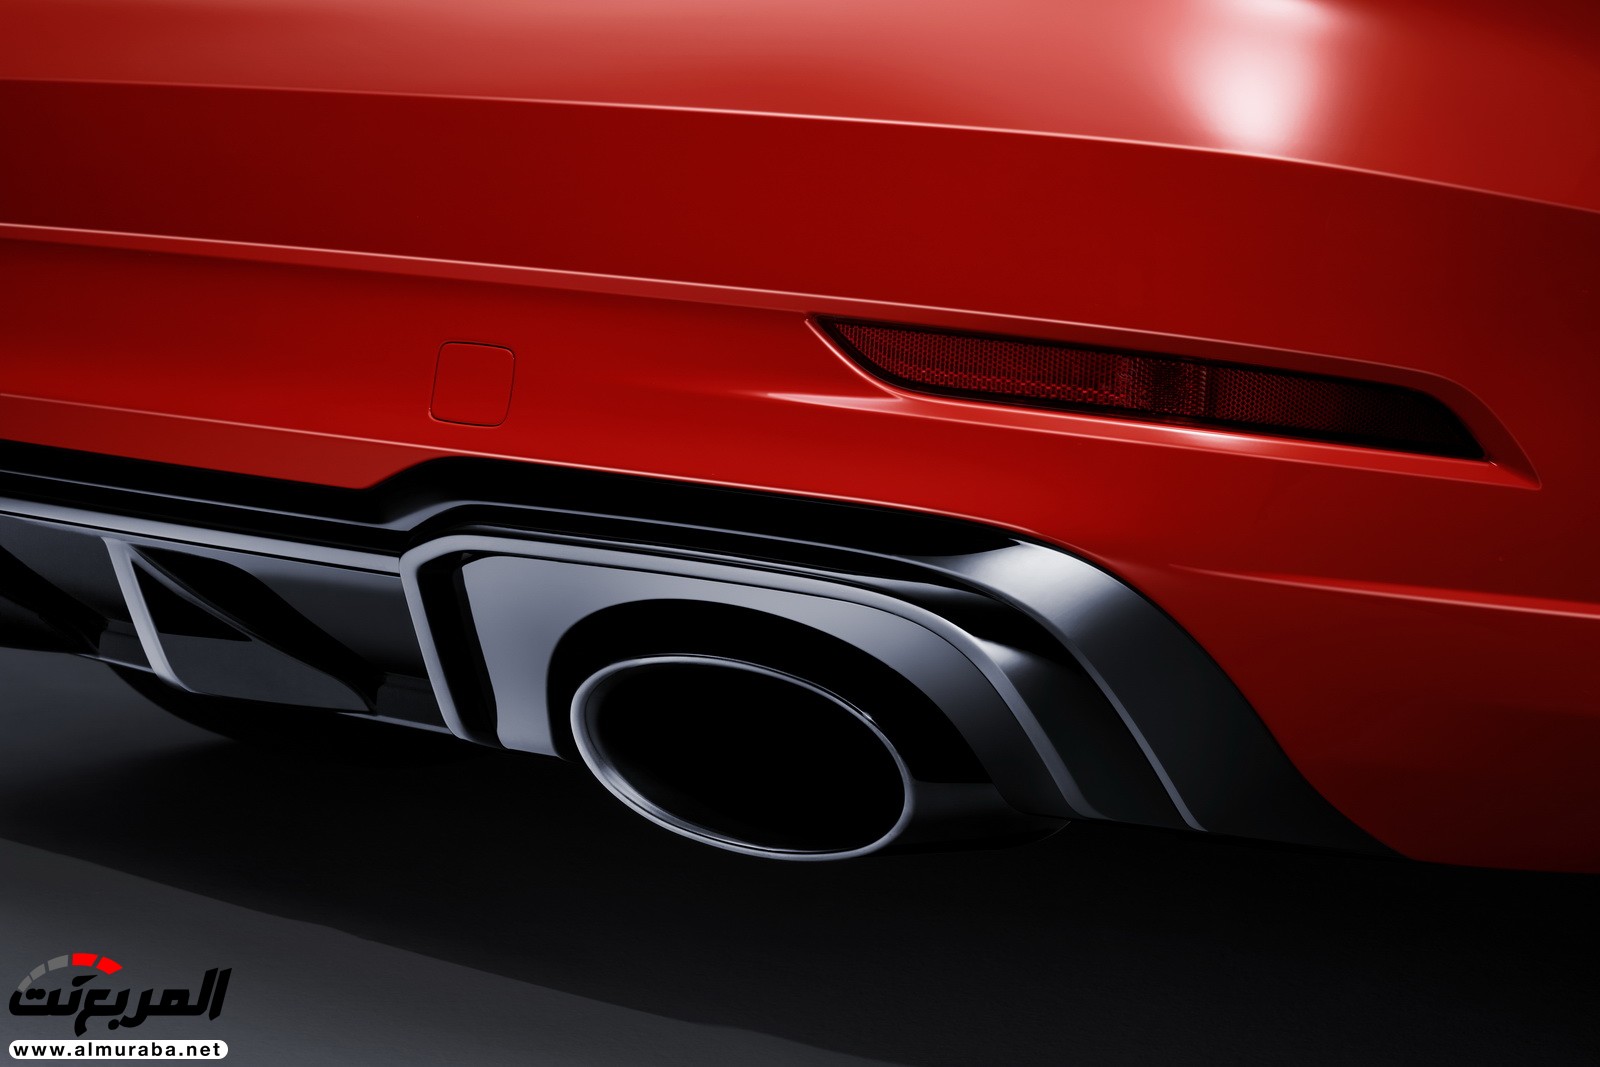 "أودي" تكشف عن RS3 الجديدة كليا 2018 بقوة 395 حصان Audi 36